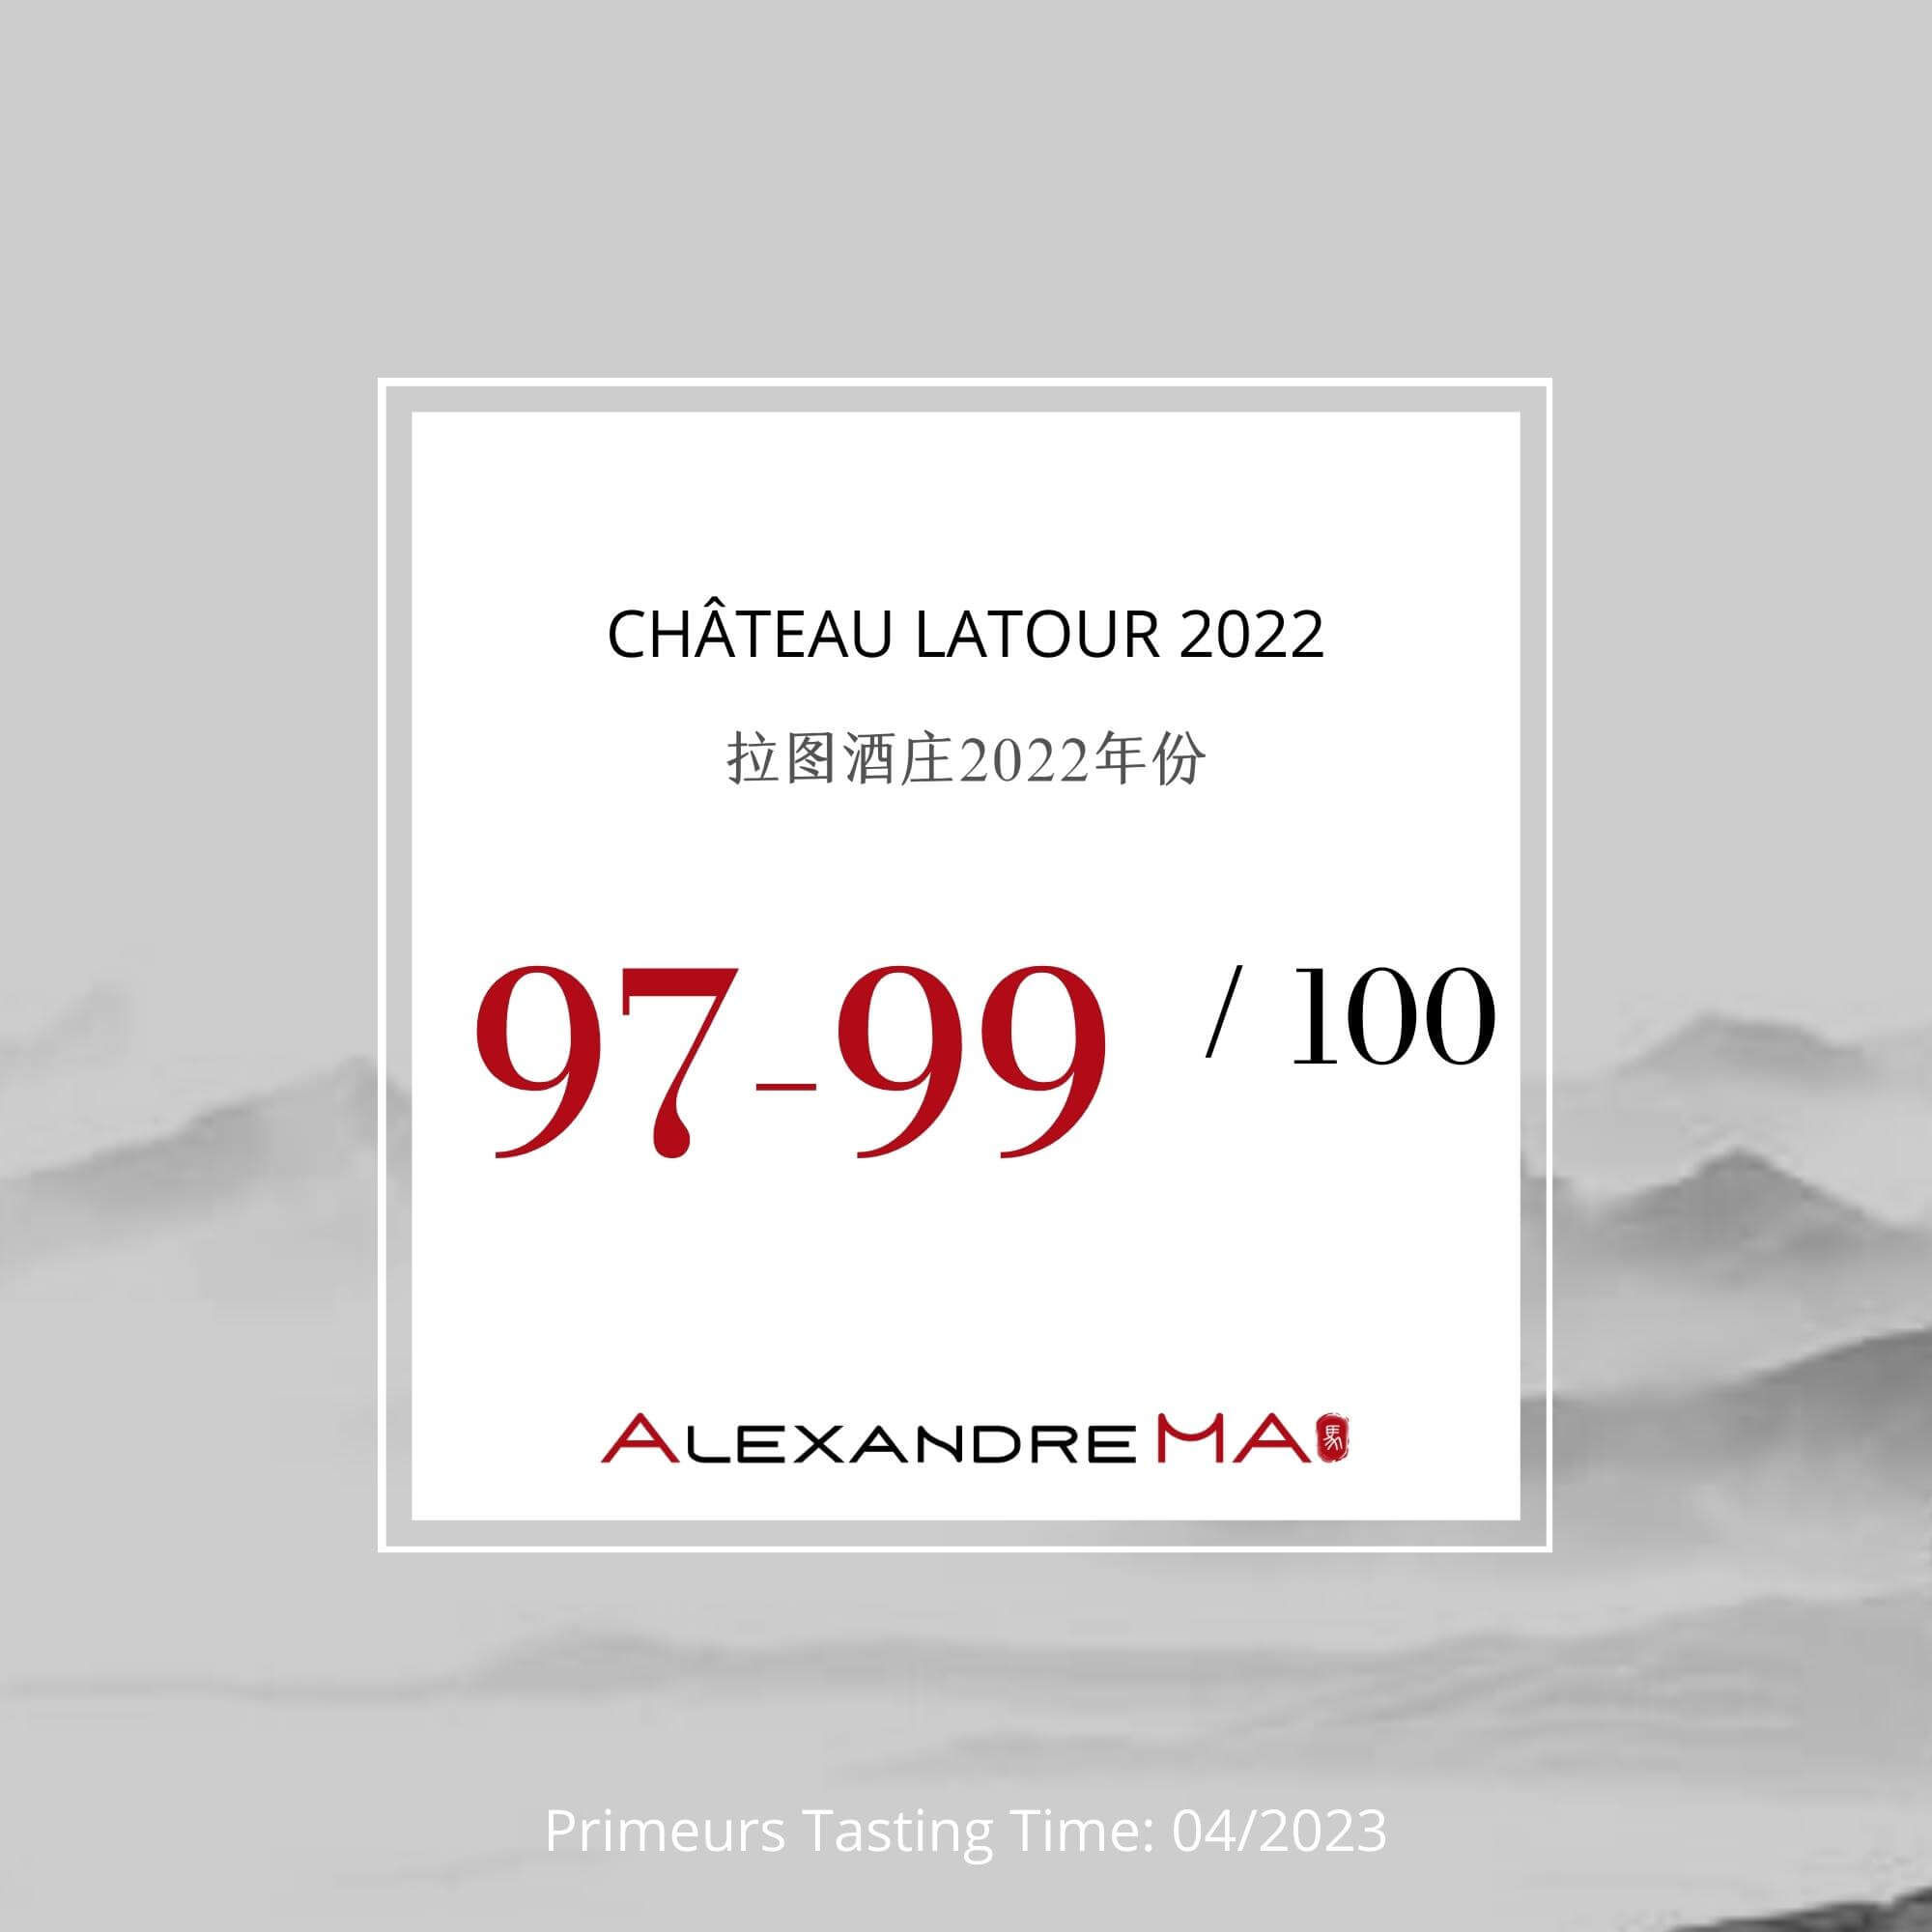 Château Latour 2022 Primeurs - Alexandre MA